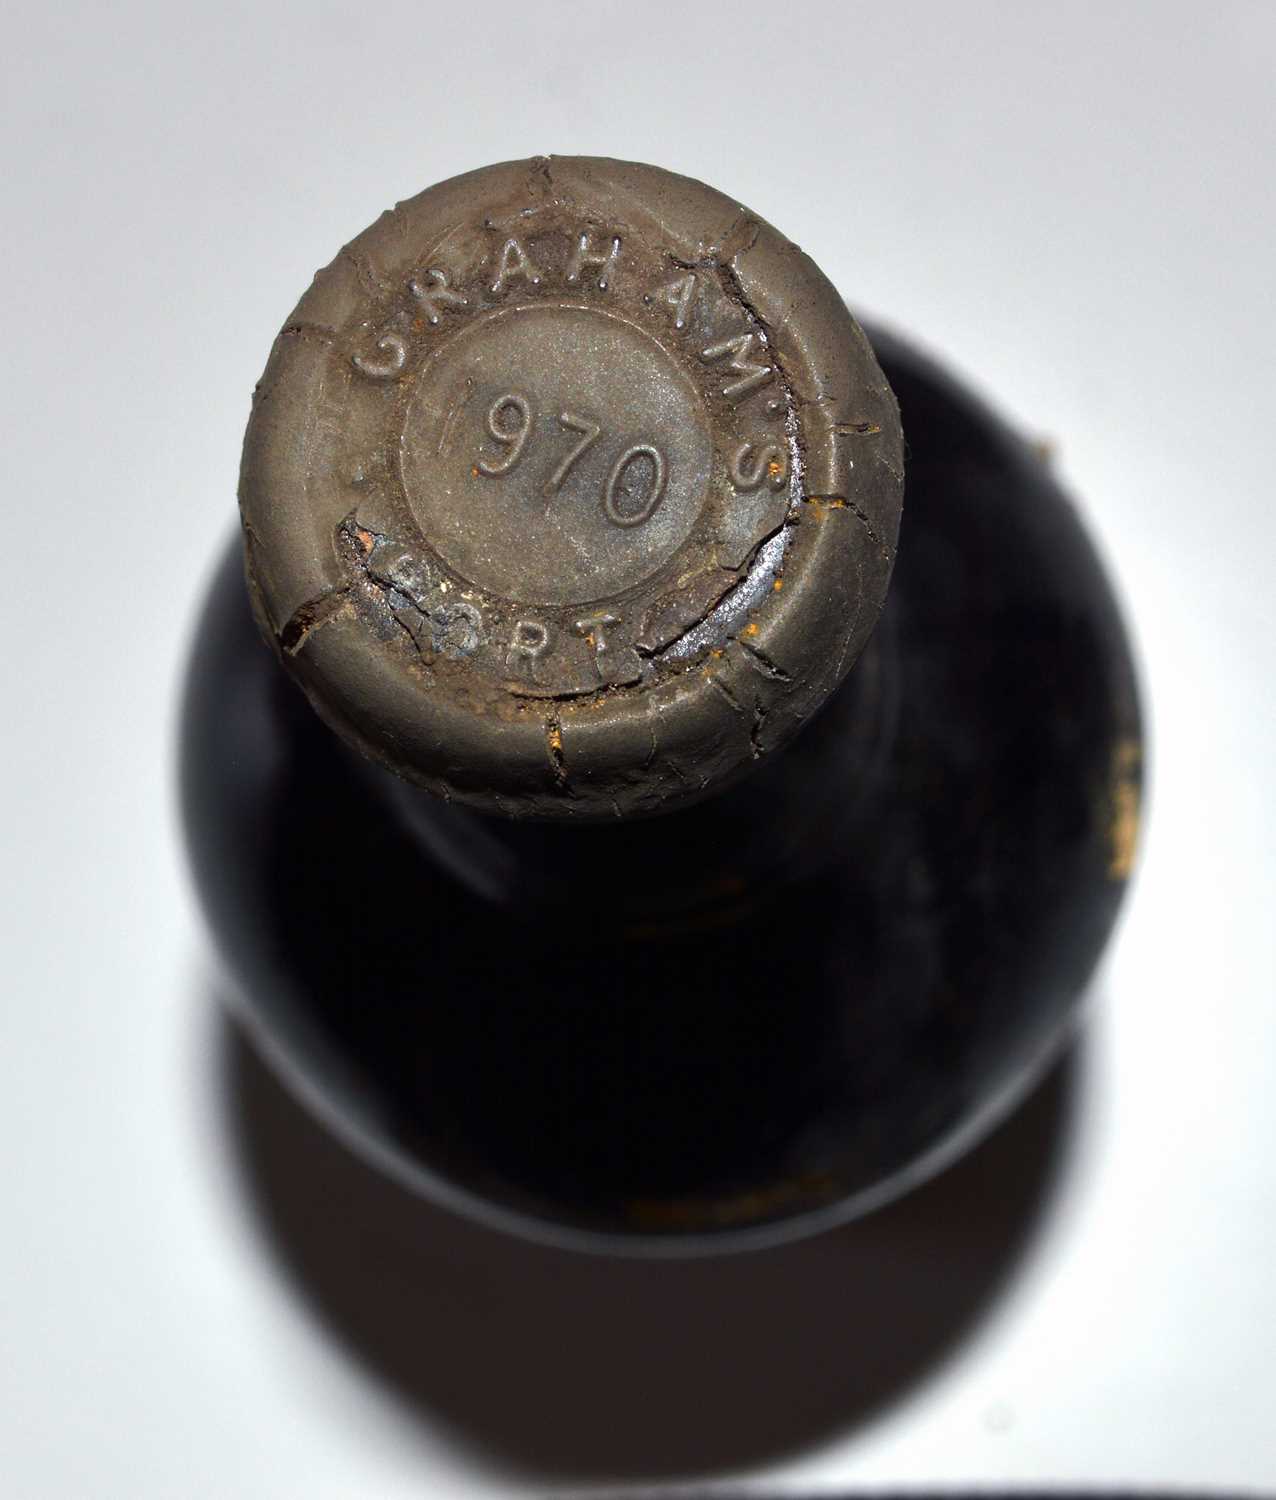 9 bottles Graham’s Vintage Port 1970 - Image 2 of 2